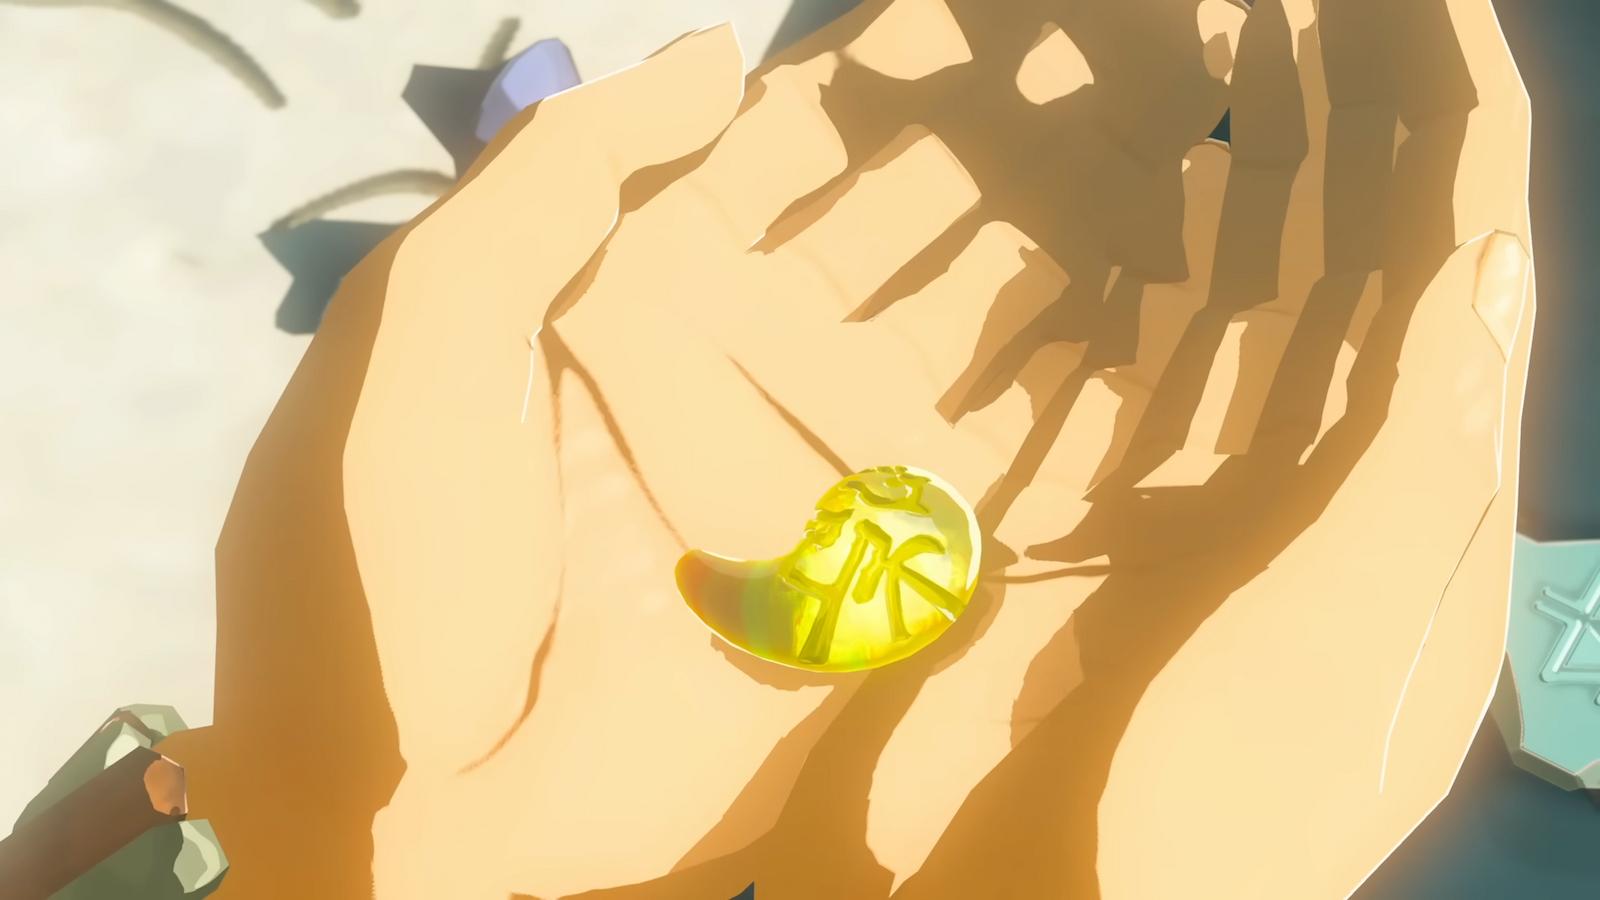 Zelda holding a tear in Tears of the Kingdom